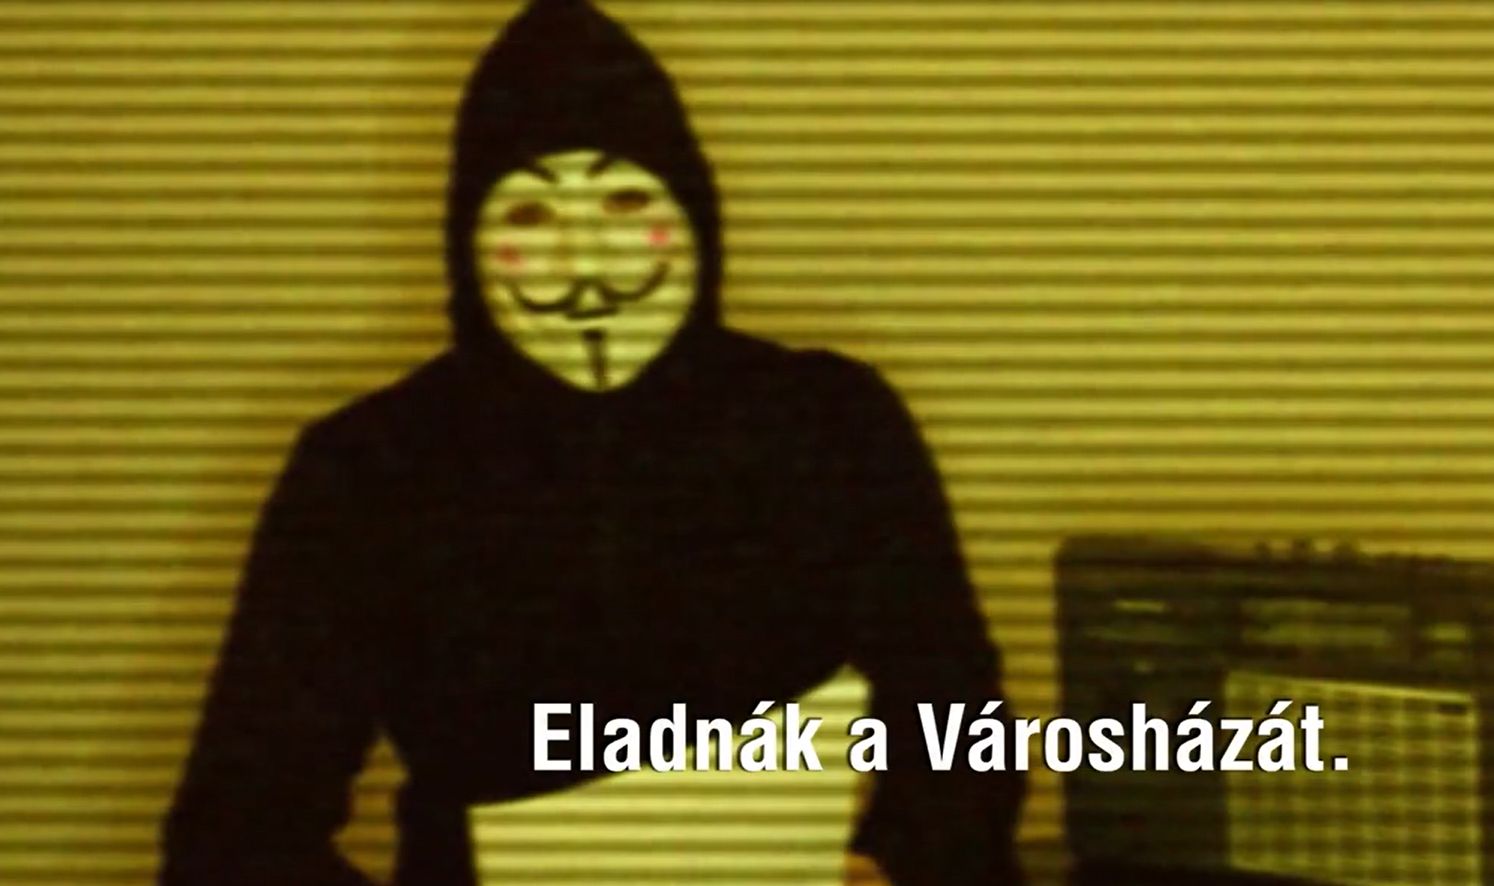 Mivel vádolja a fővárost az Anonymous-maszkos? Elmagyarázzuk!